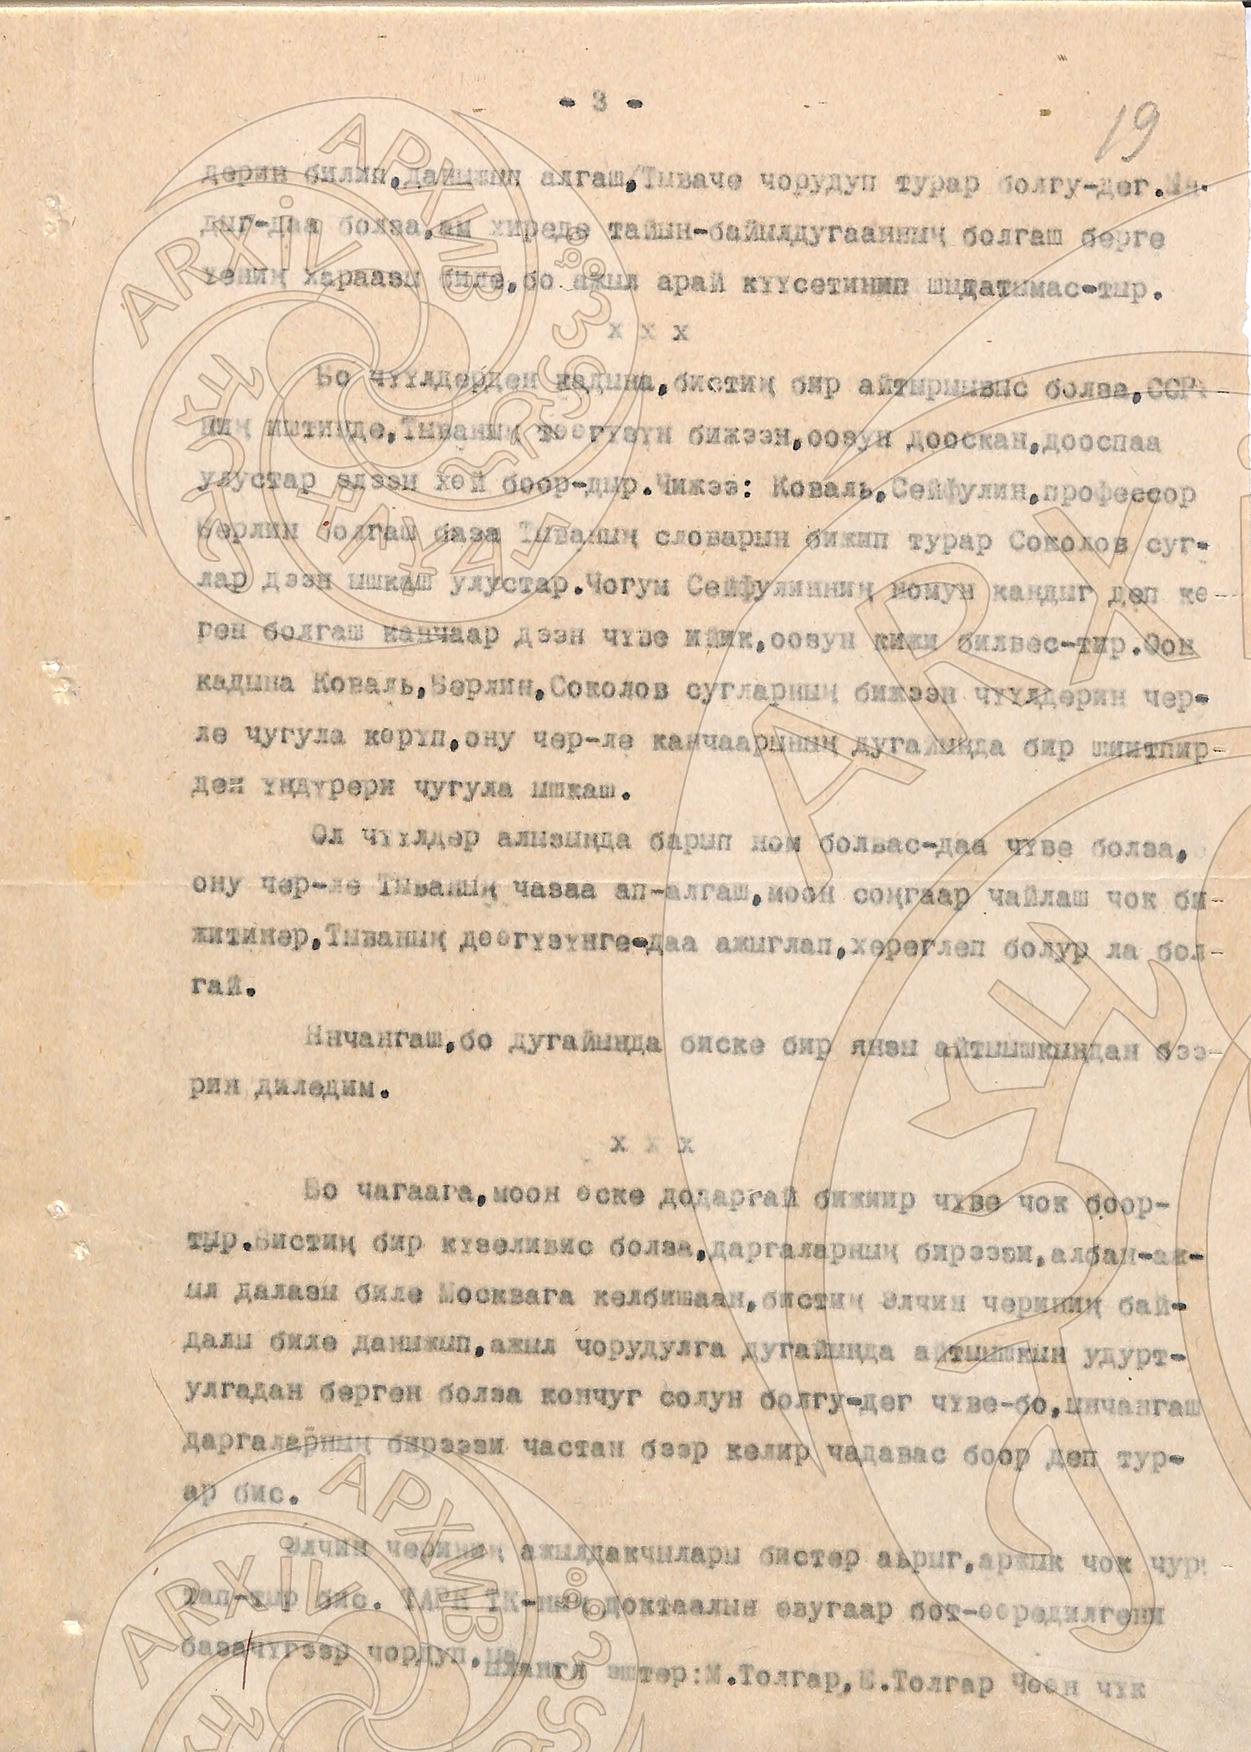 Официальные документы. Телеграммы руководителей партии и правительства тов. И.Сталину